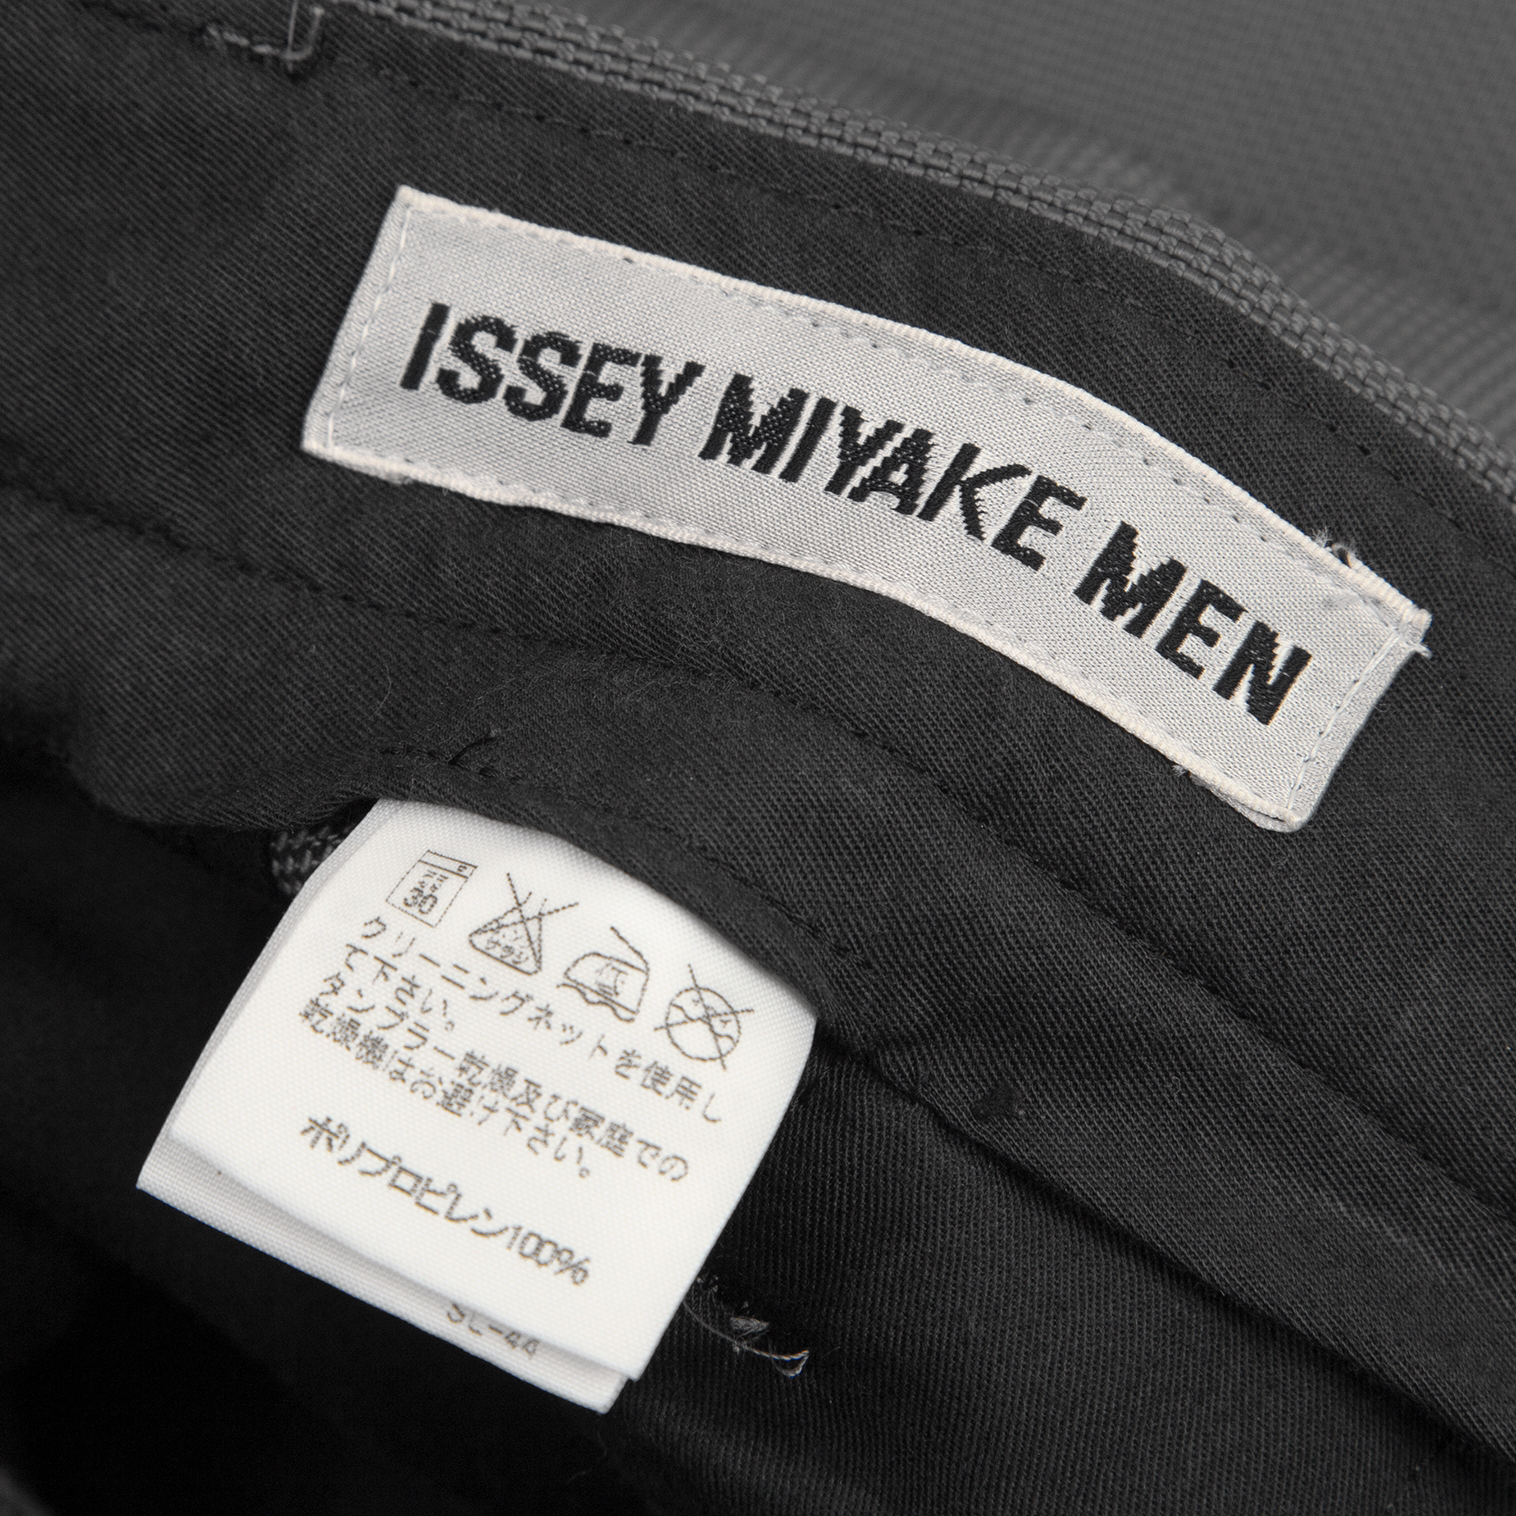 美品ISSEY MIYAKE ナイロン テーラードジャケット XL 4 グレー色